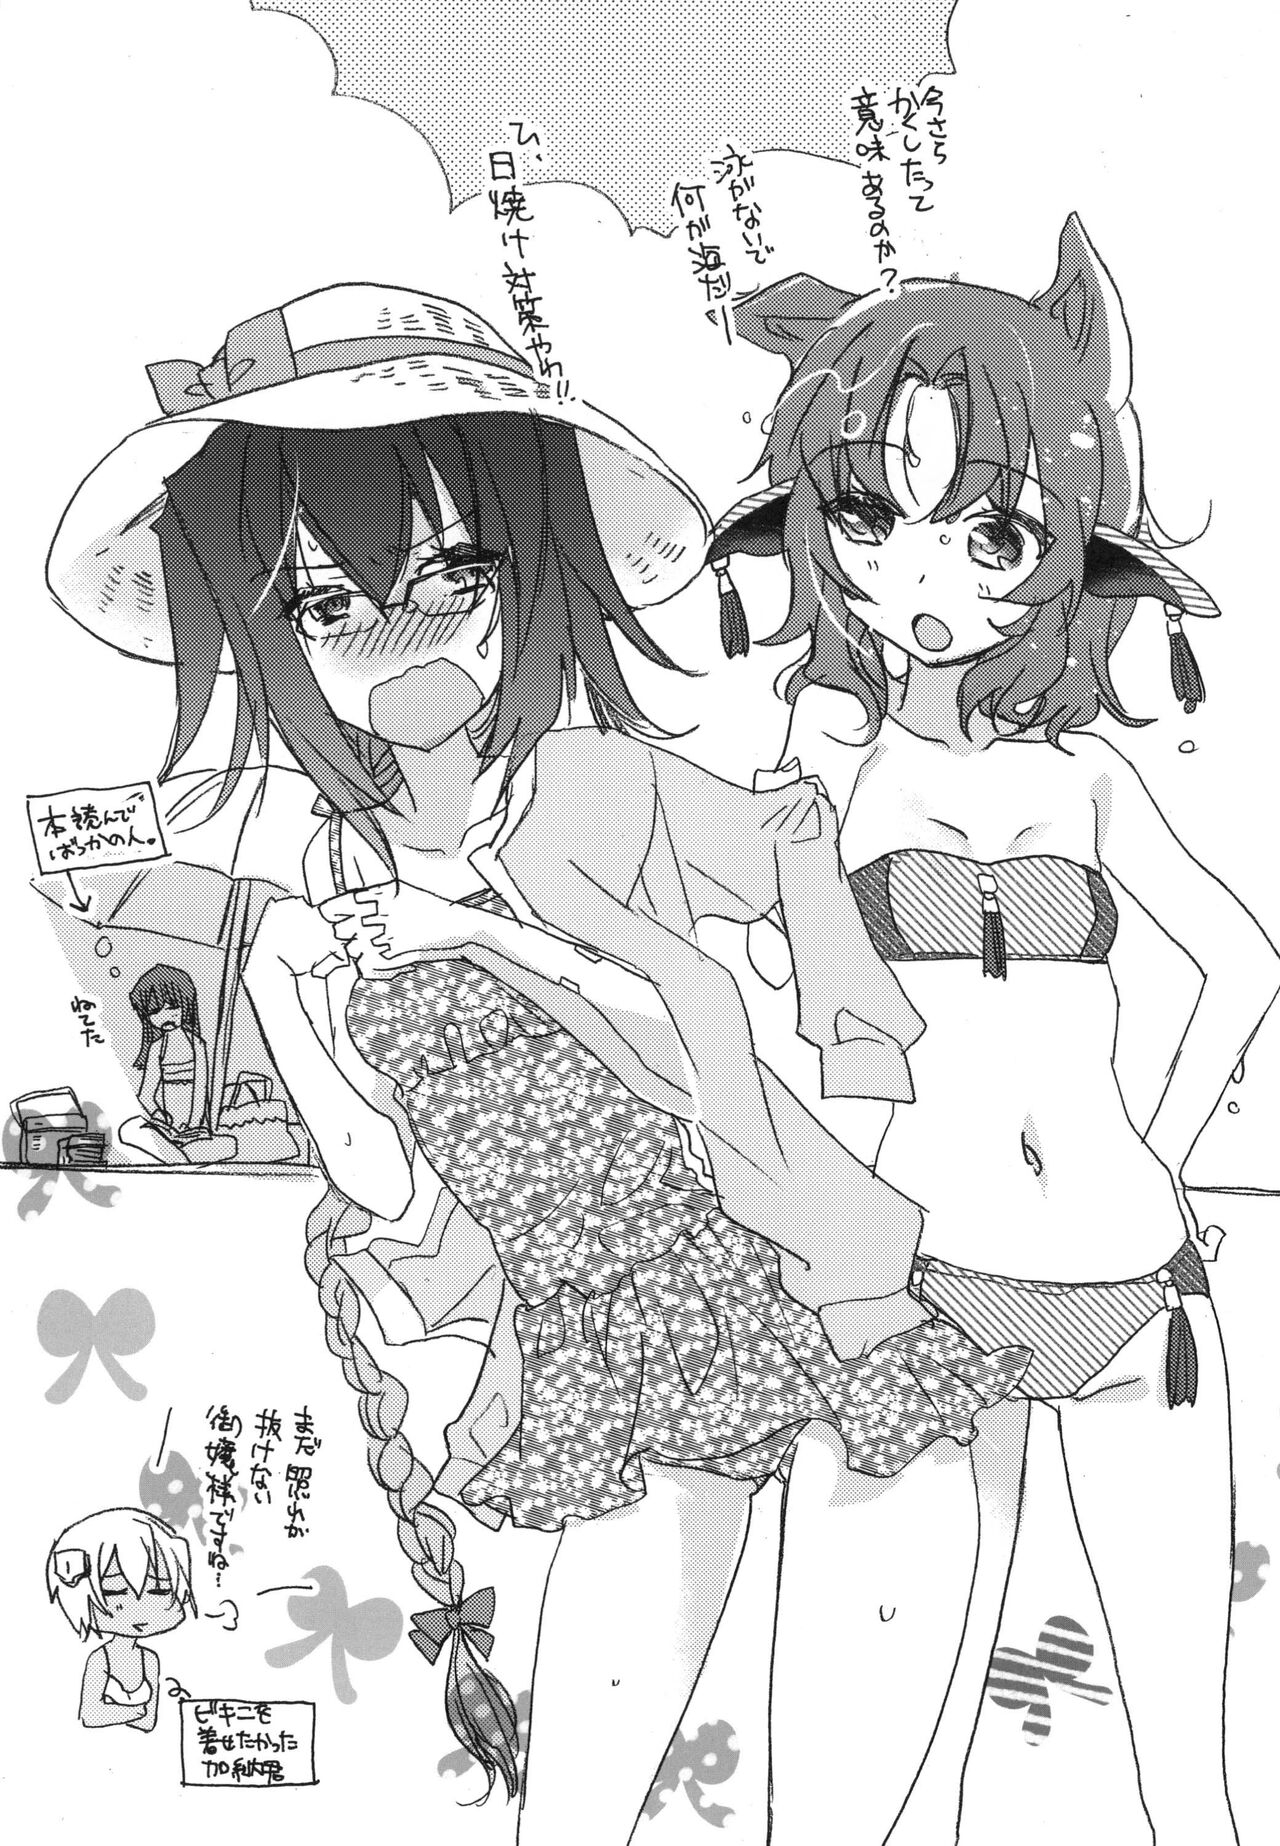 [ABLISS (Mei)] Splasu Summer!! (Kyoukai Senjou no Horizon) [Digital] 25